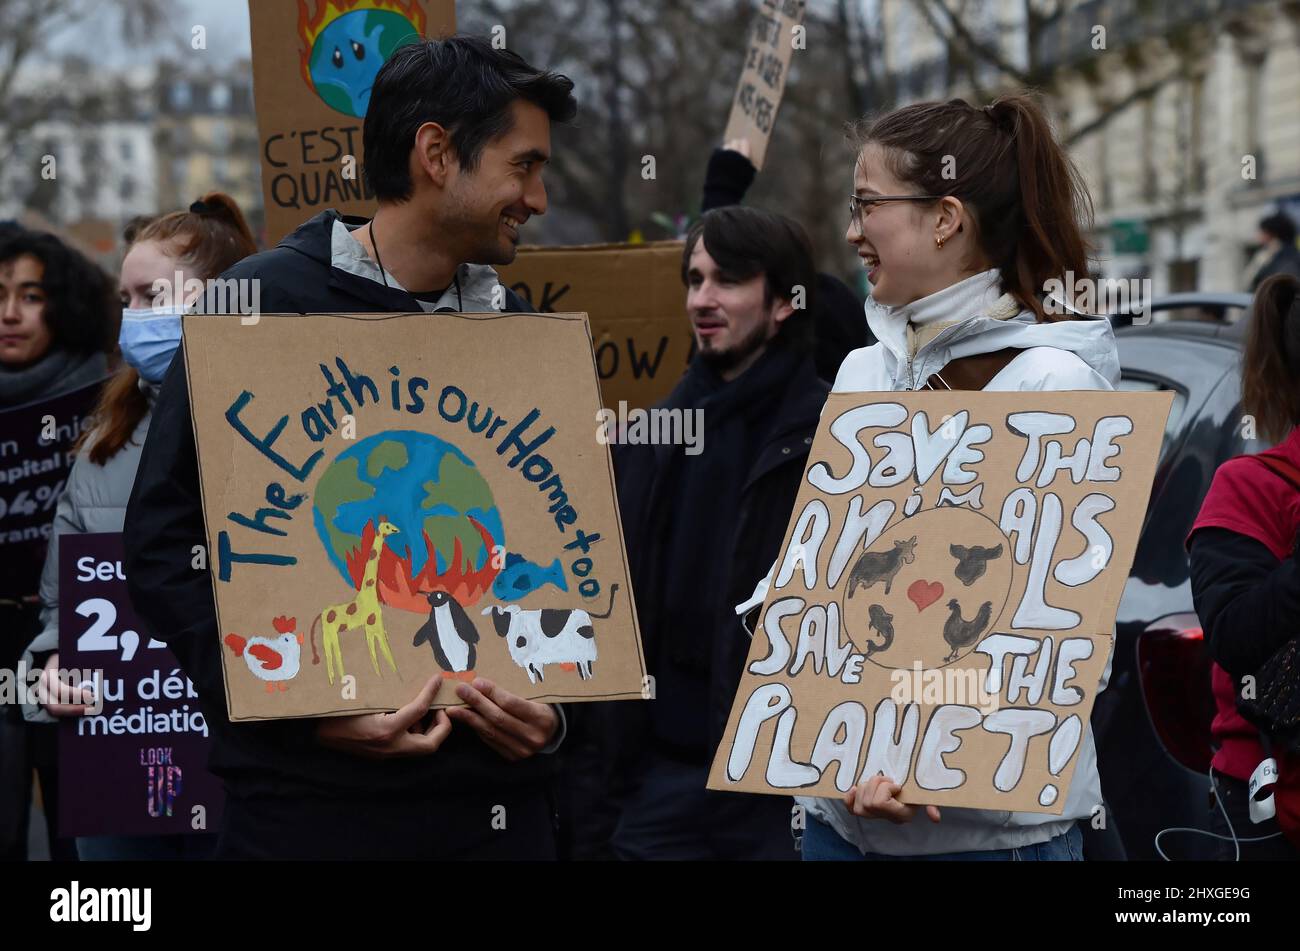 Marcia per il clima a Parigi ha riunito circa 8000 persone tra 'nazione' e 'pubblico'. Lo slogan ha posto l'ecologia al centro della presidenza Foto Stock